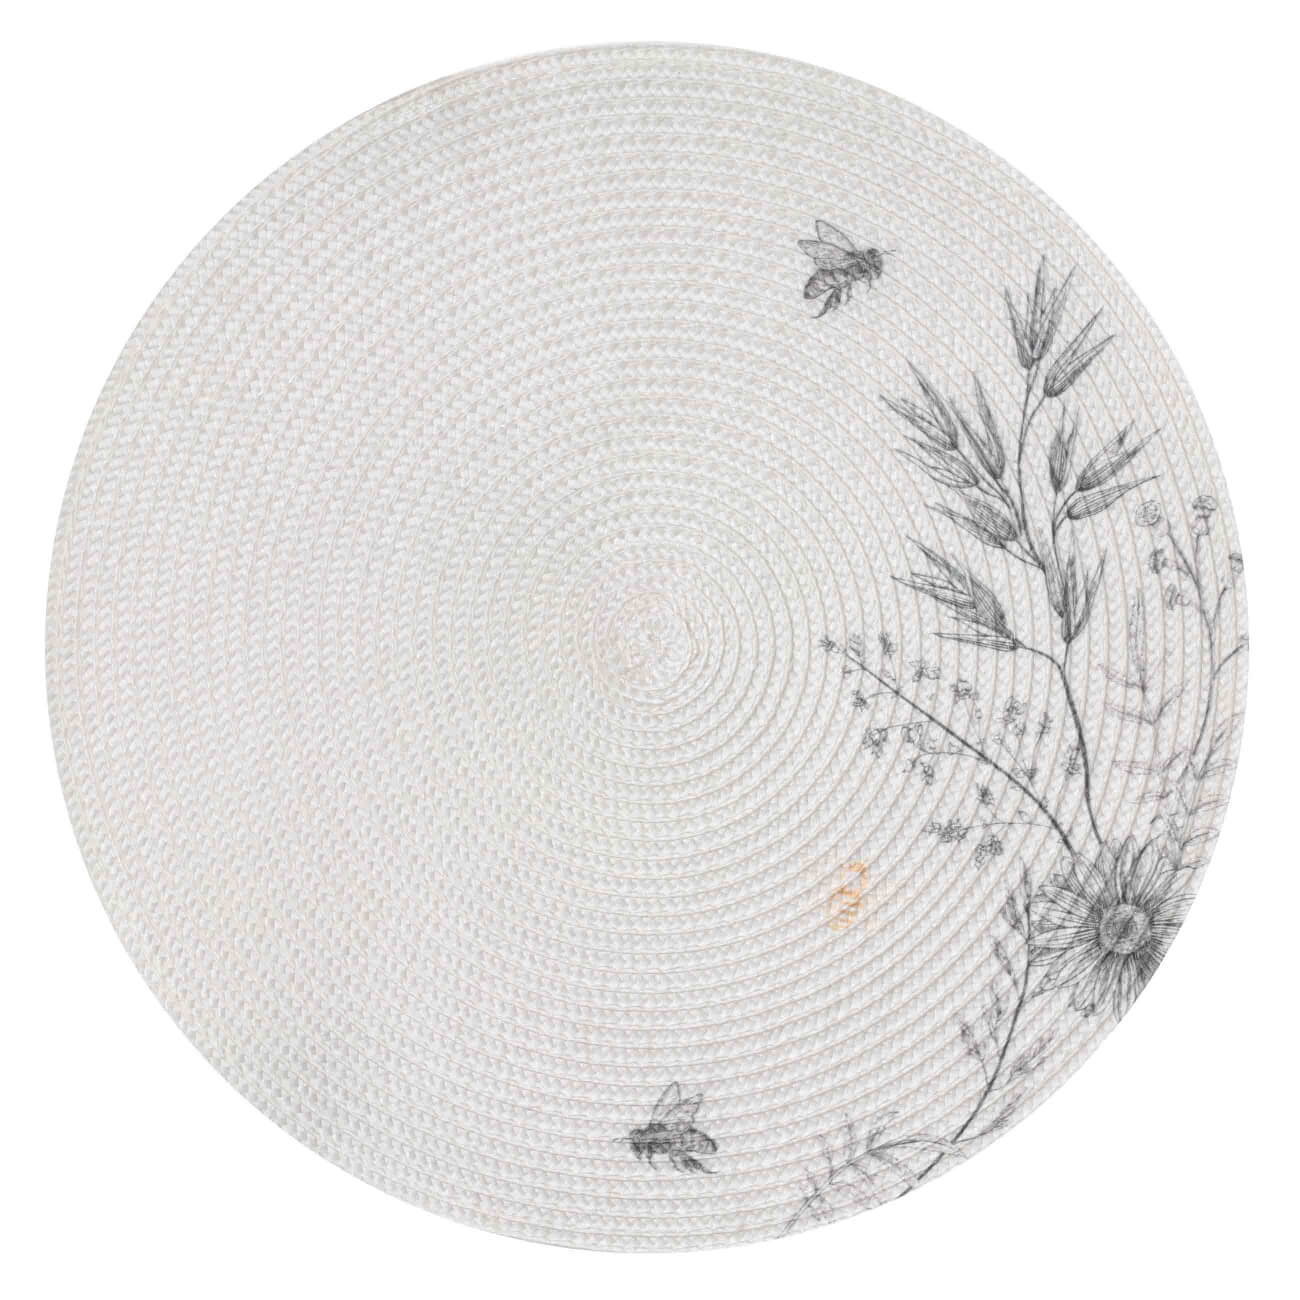 Салфетка под приборы, 38 см, полипропилен/полиэстер, круглая, серо-бежевая, Цветы и пчелы, Circle print изображение № 1